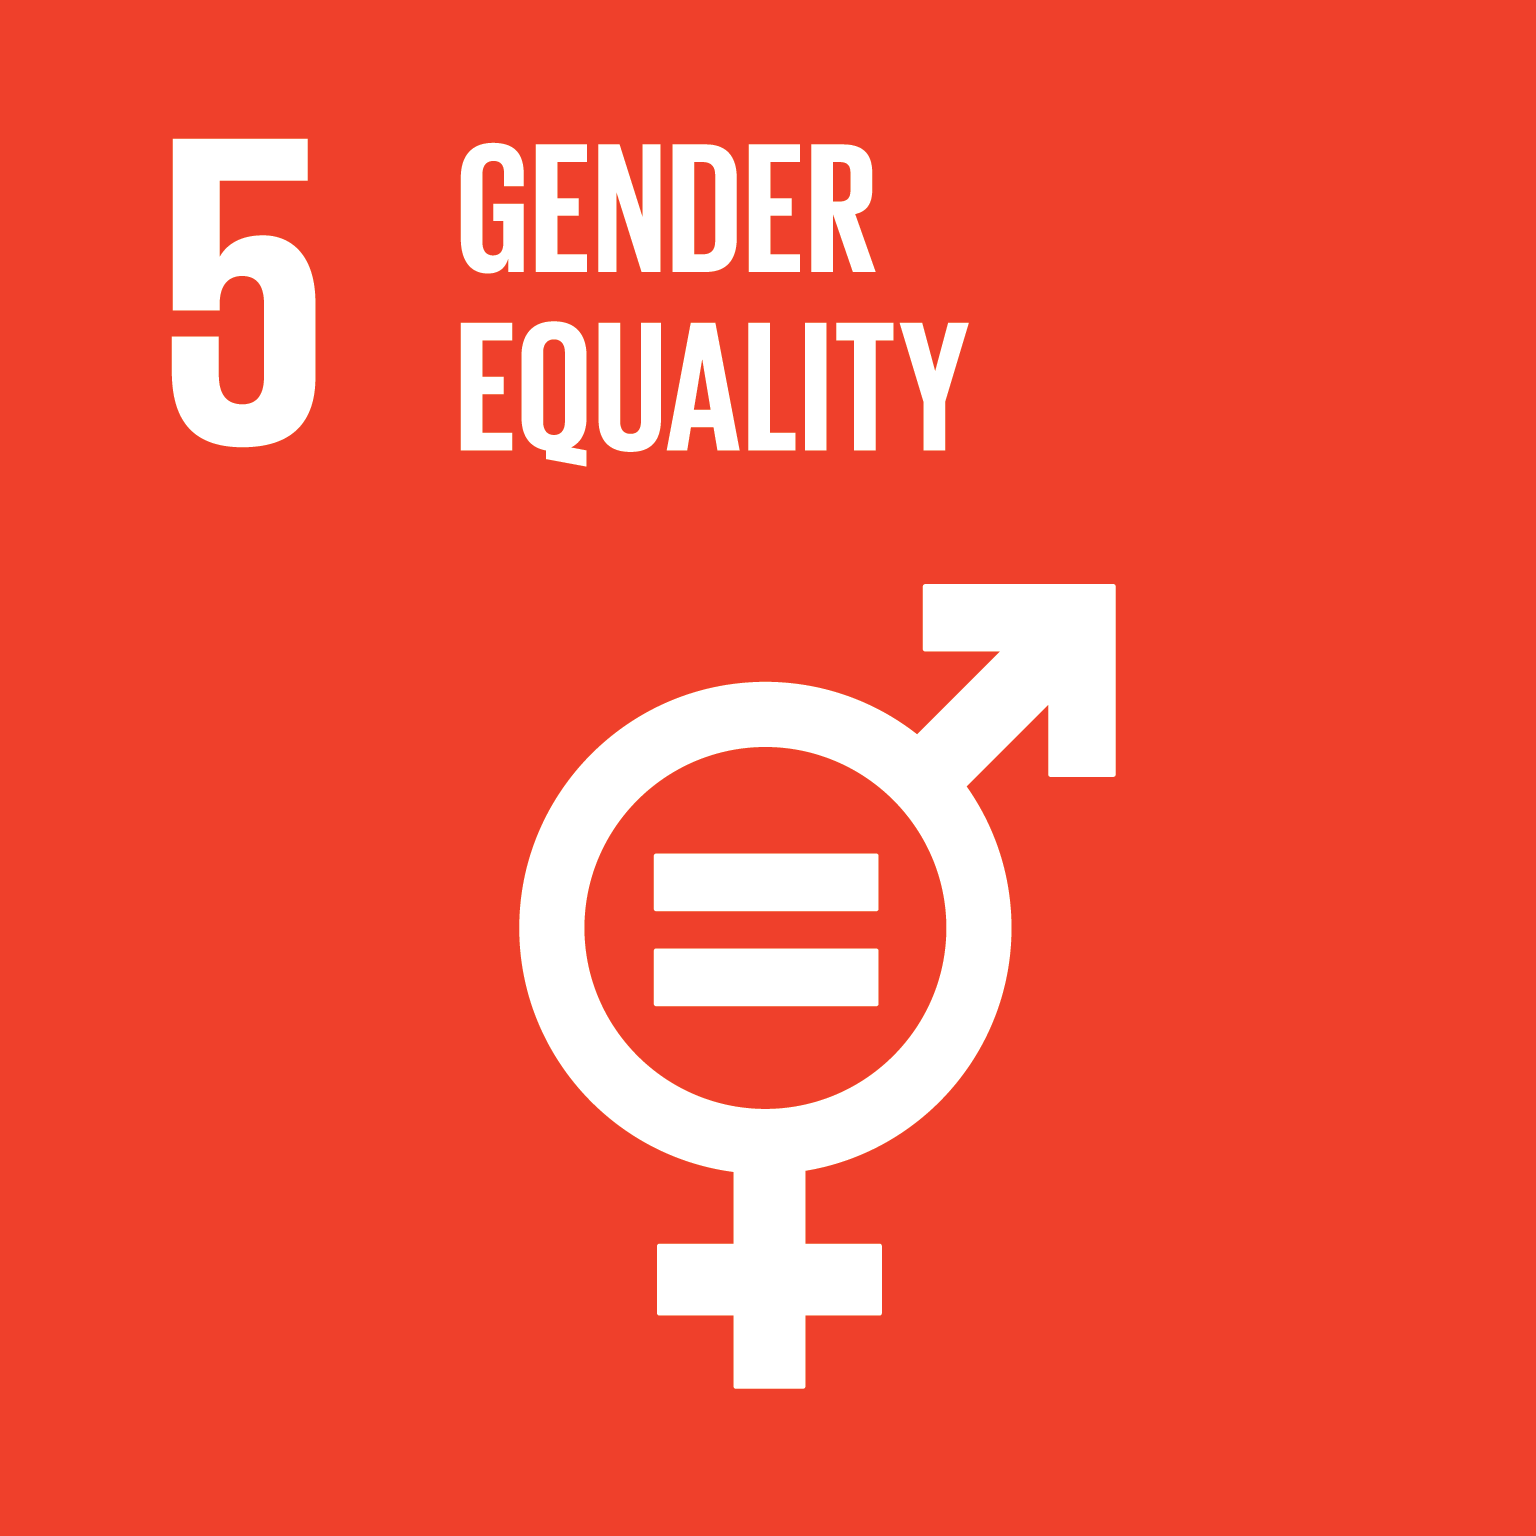 Goal 5. Gender equality